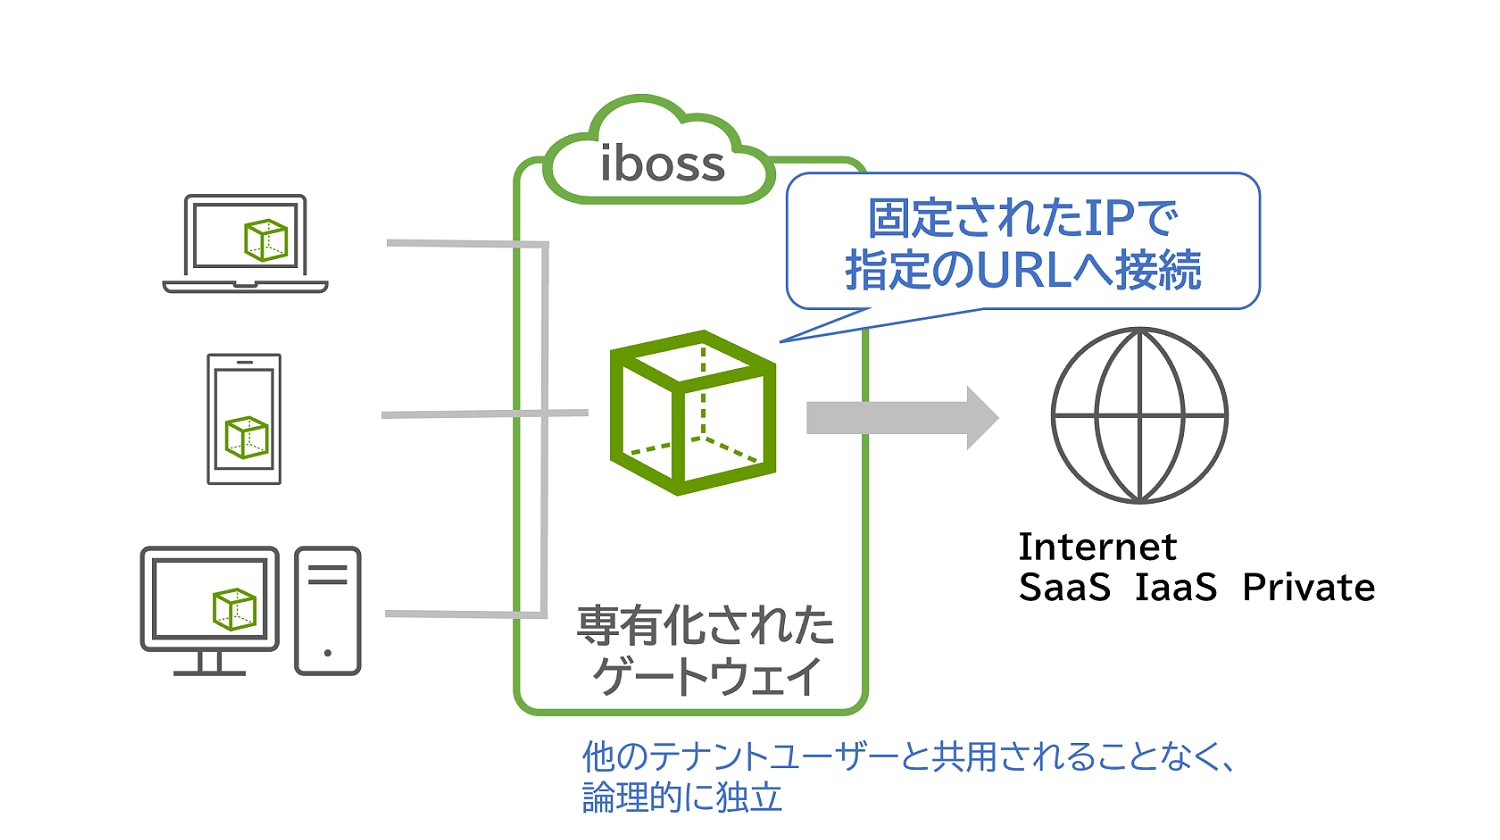 iboss独自技術で企業ごとに専有化されたゲートウェイを提供